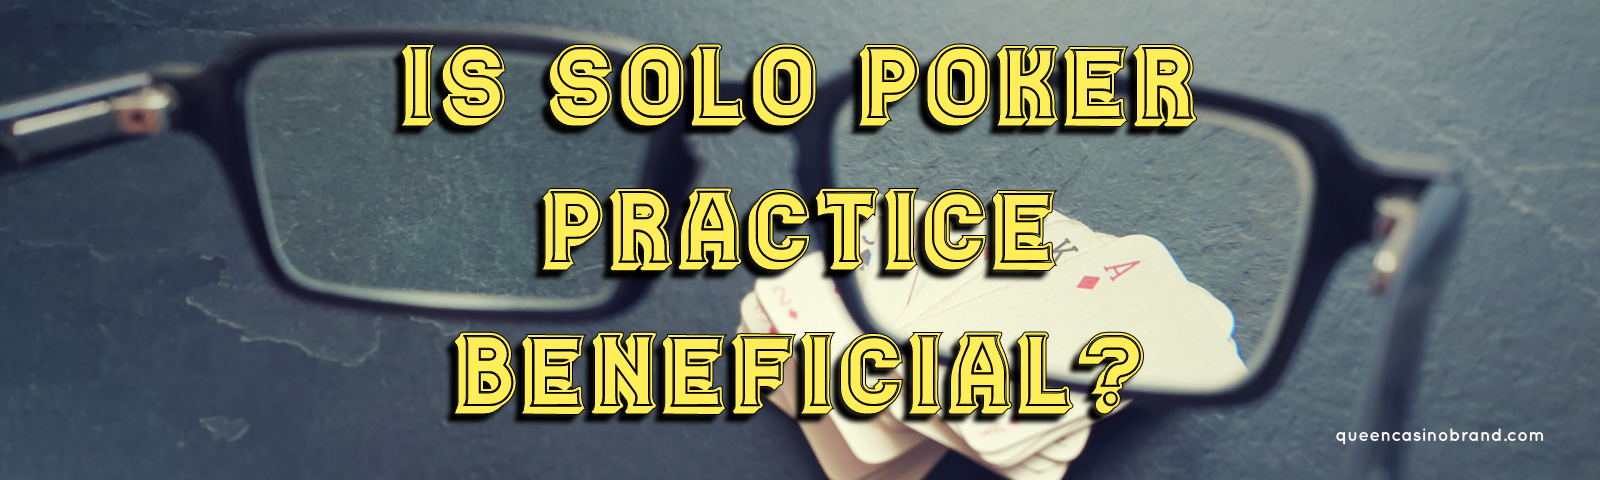 Is Solo Poker Practice Beneficial? - Queen Casino Brand